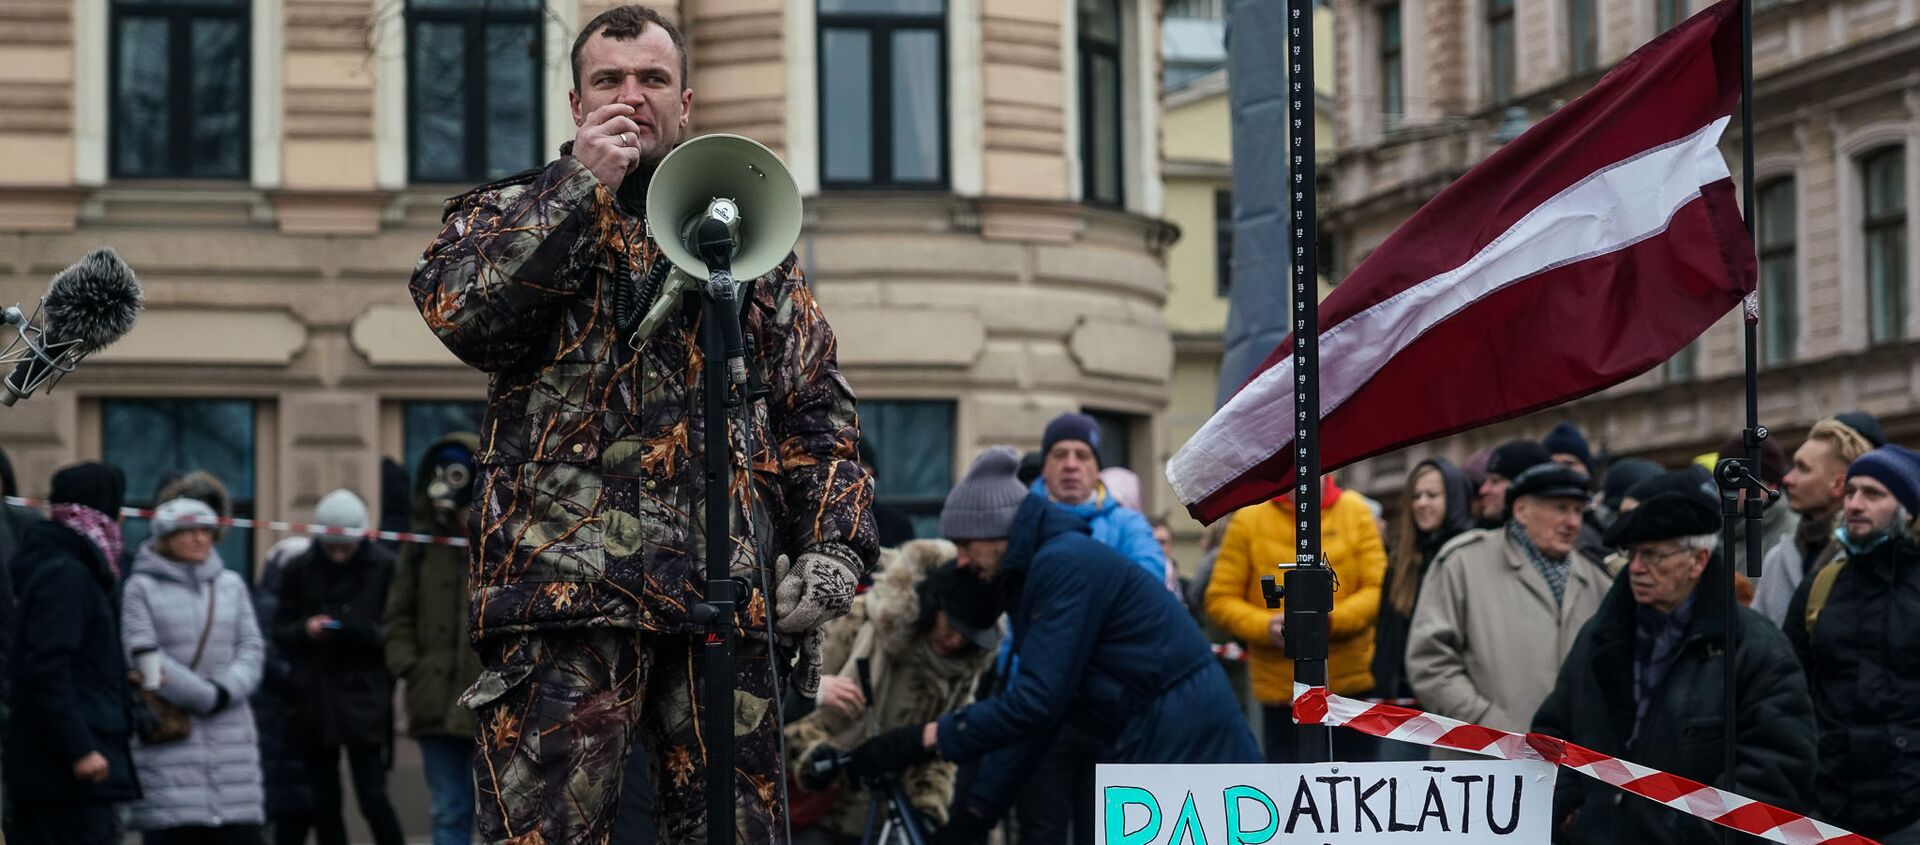 Акция протеста на набережной 11 Ноября в Риге против ограничений в связи с пандемией COVID-19 - Sputnik Латвия, 1920, 16.12.2020